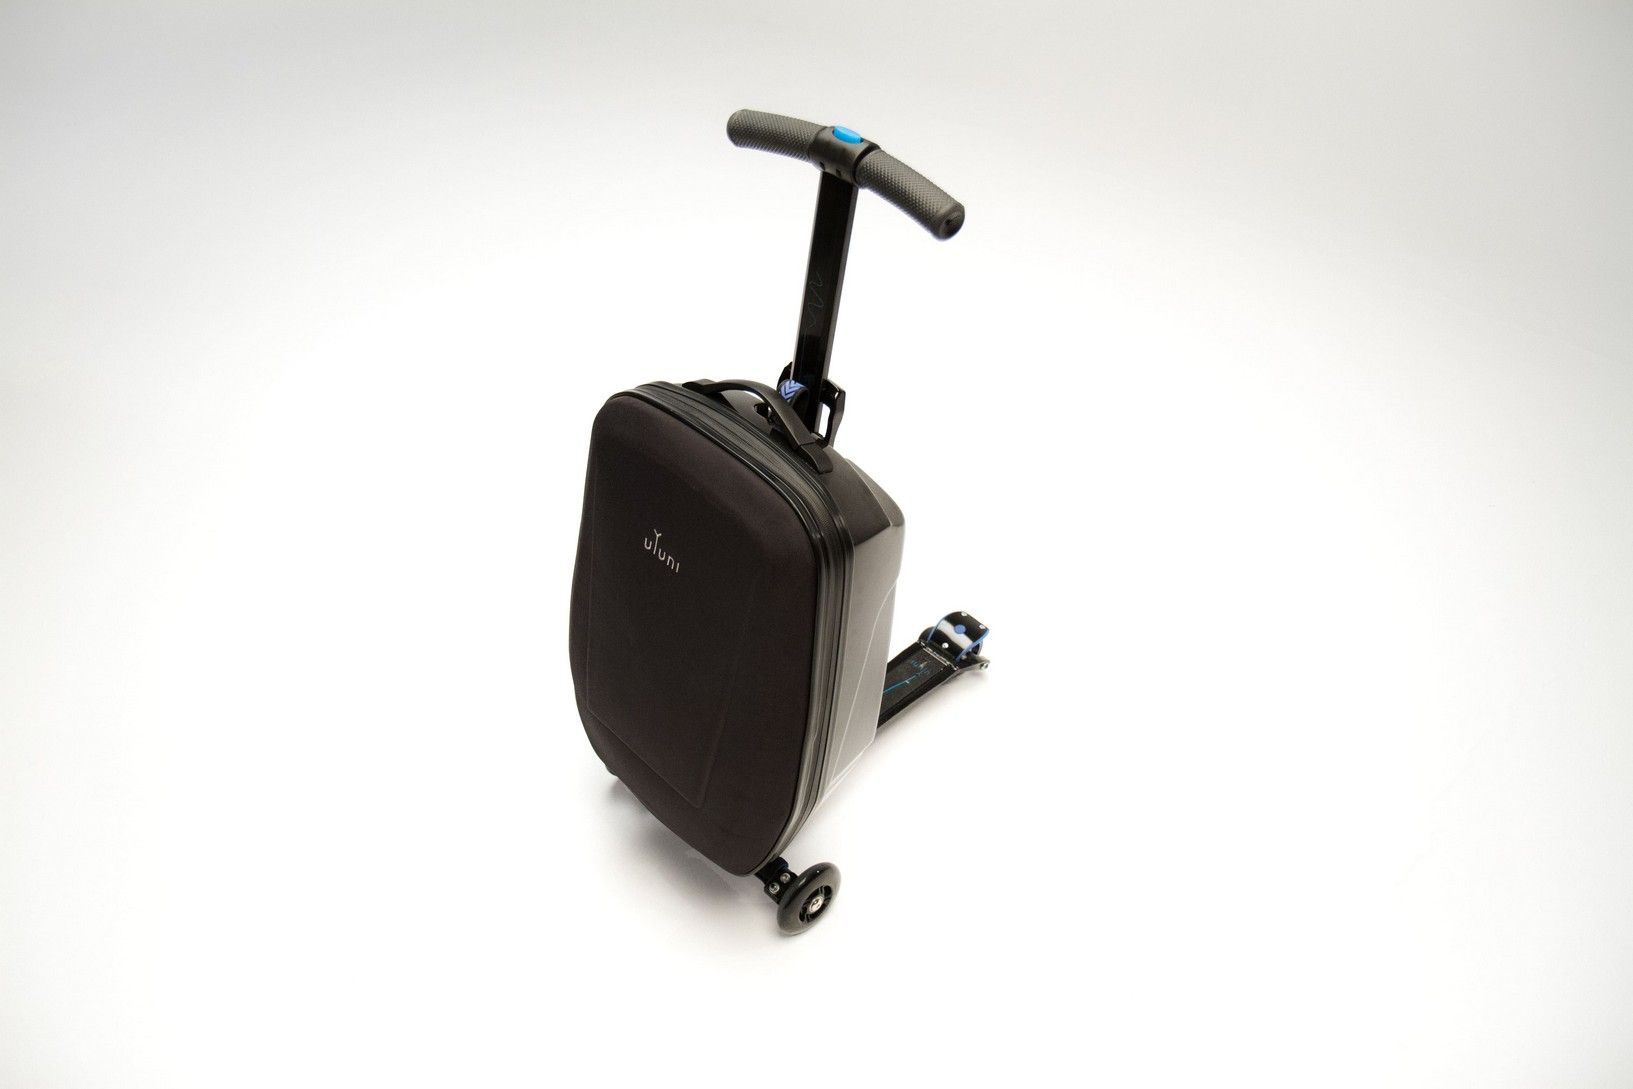 Empuje Conmoción golpear uYuni Scooter Suitcase - uYuni Scooter Luggage